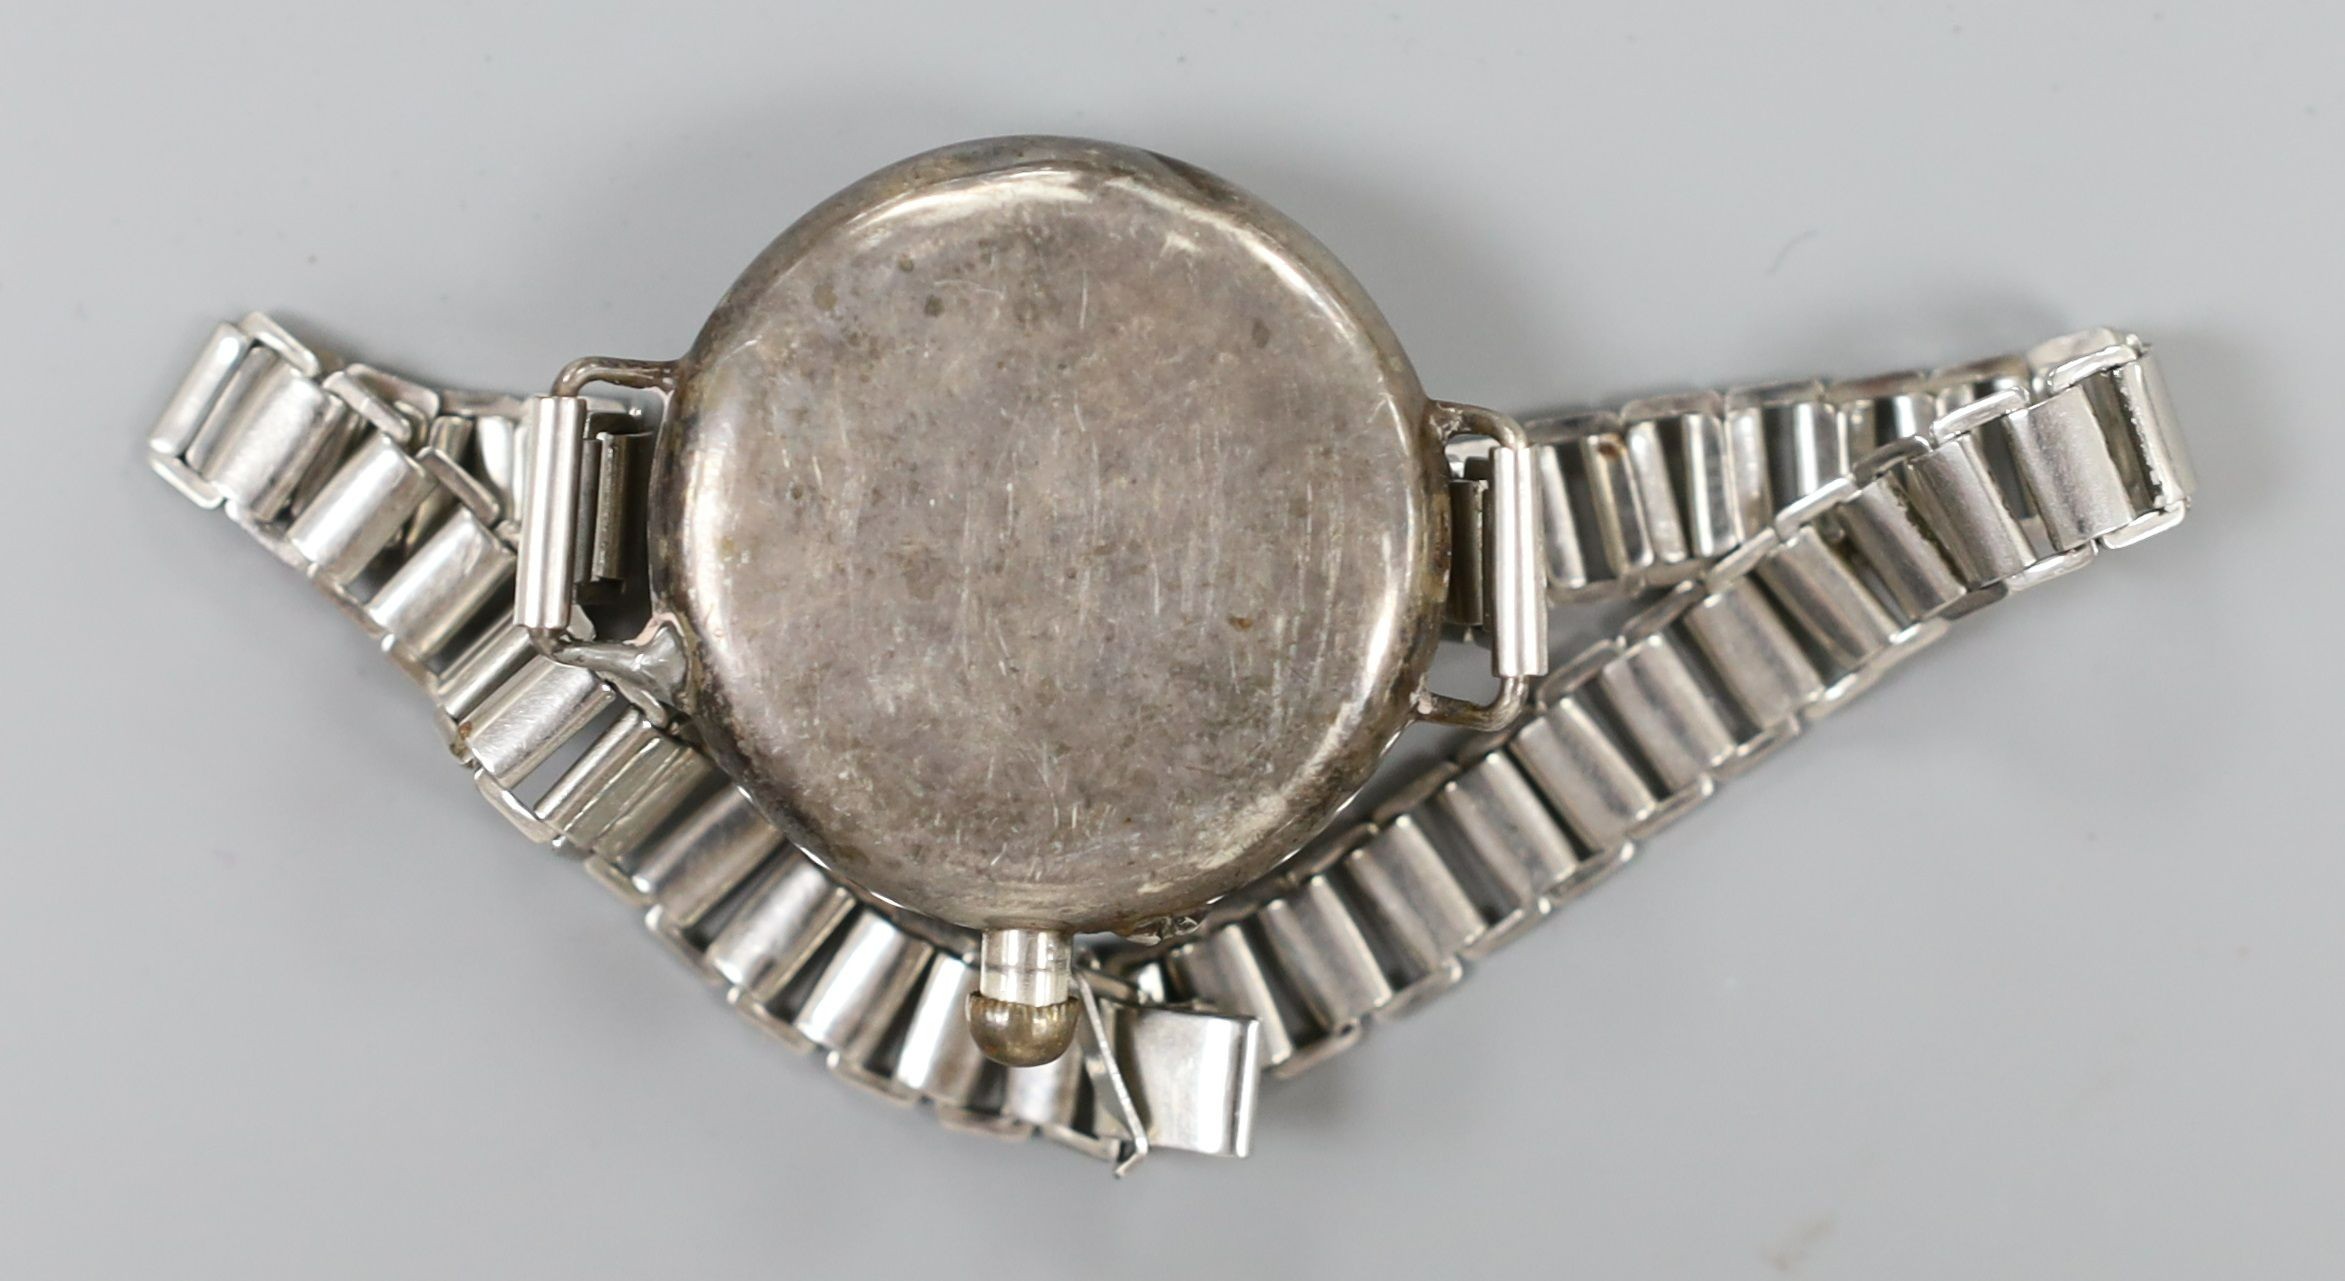 A gentleman's early 20th century silver Borgel cased manual wind wrist watch, on a metal bracelet.